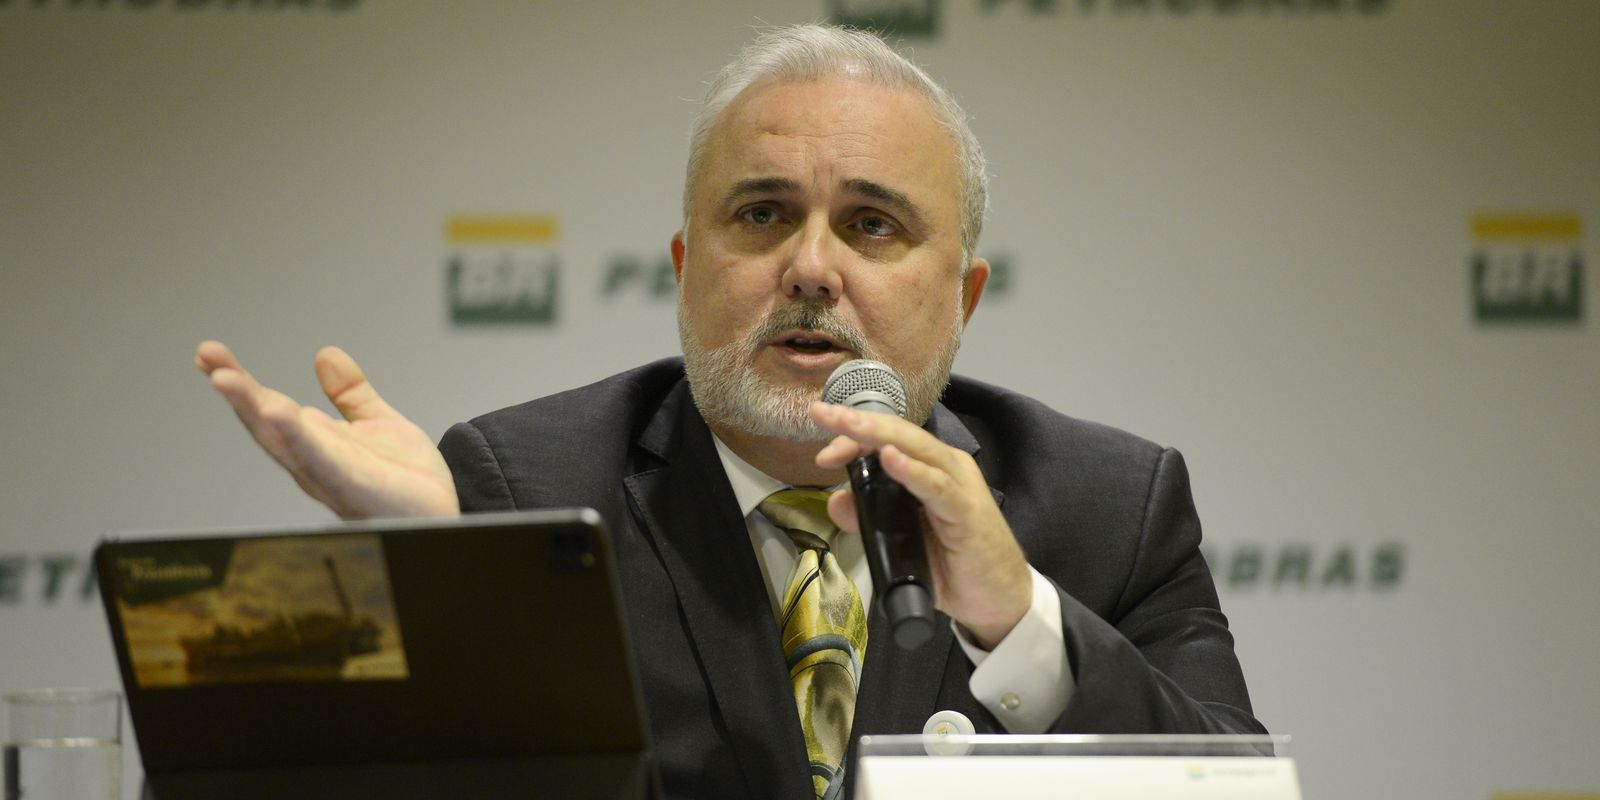 Guerra no Oriente Médio pode aumentar preço do diesel, diz Petrobras – finanças brasil